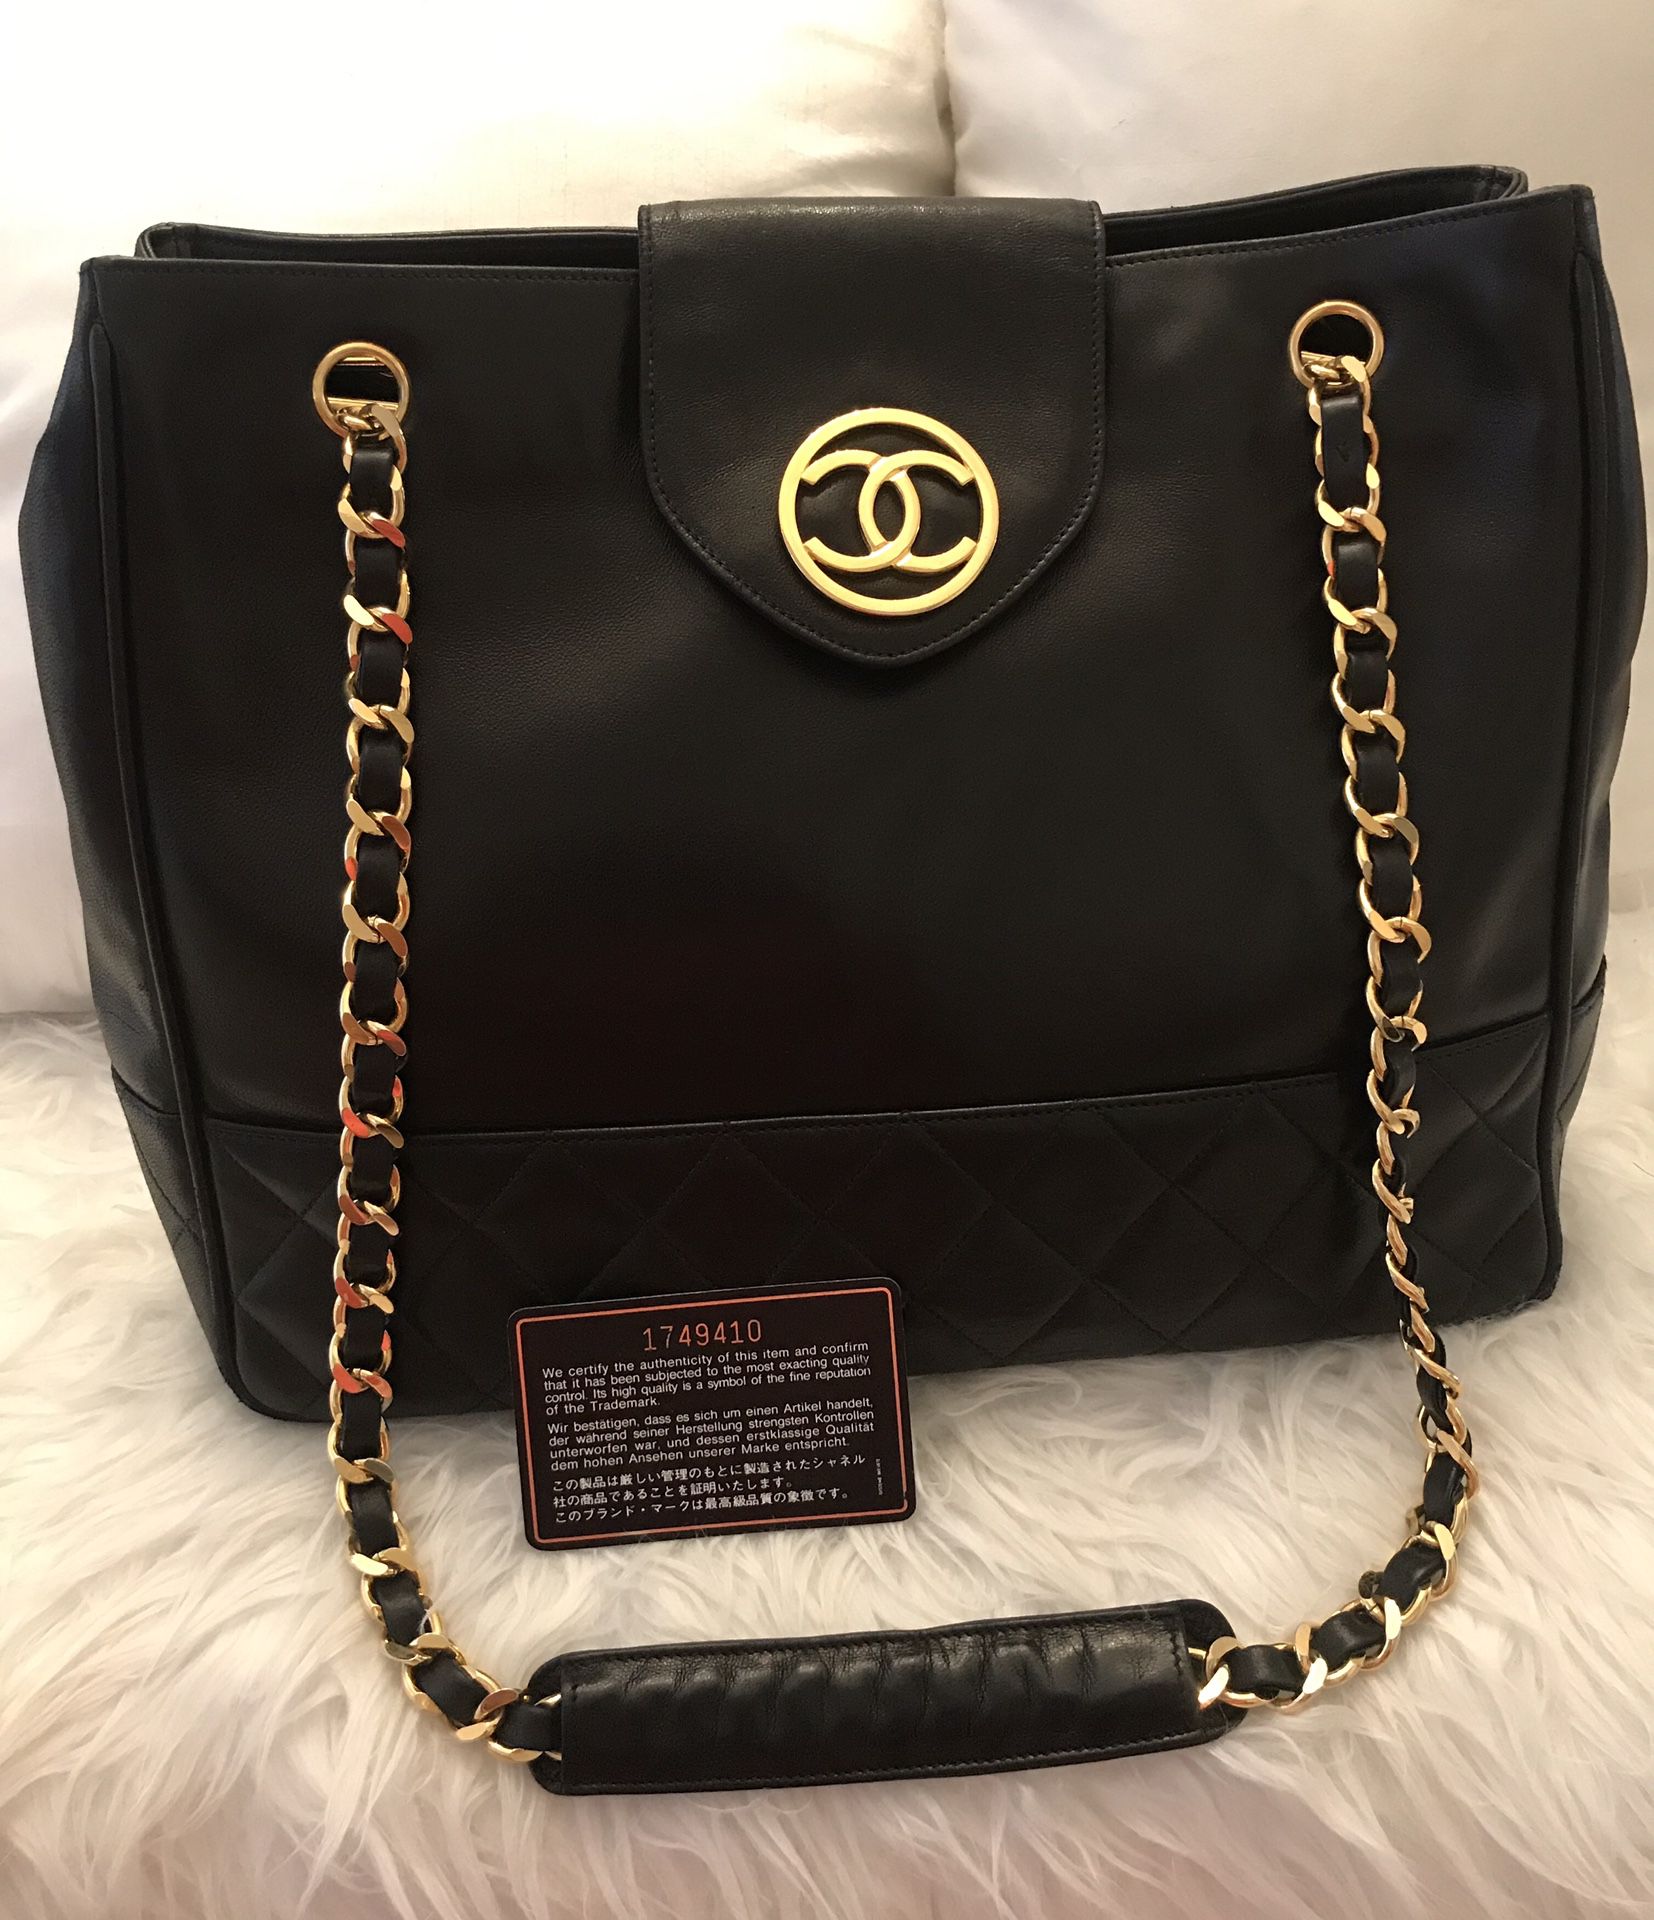 Authentic Vintage Chanel Bag - Excellent condition